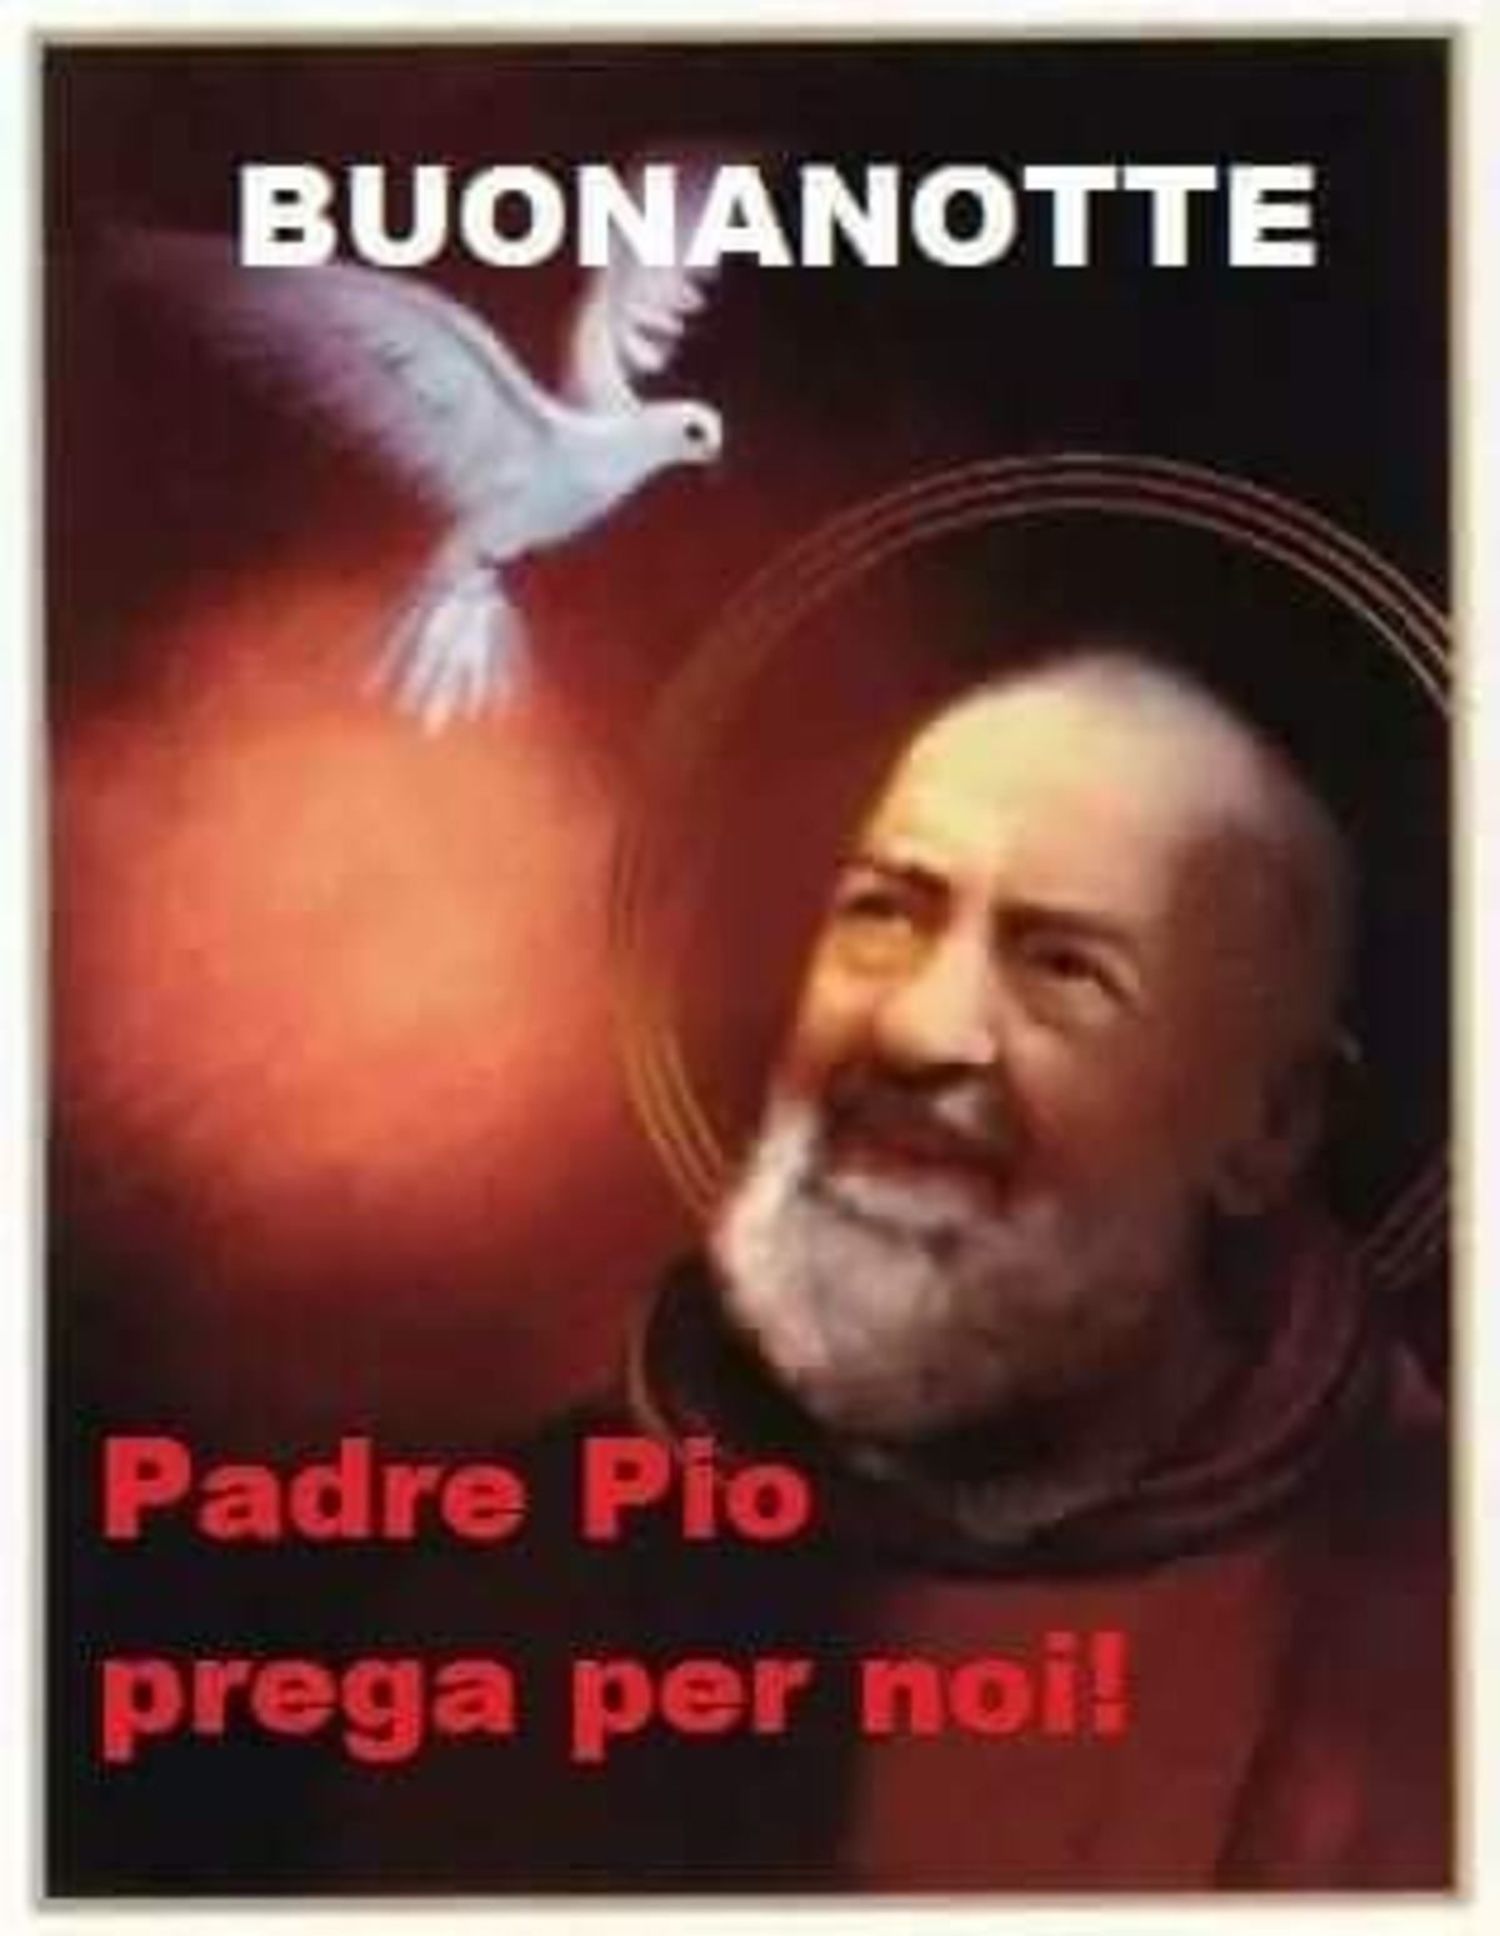 Buonanotte da Padre Pio immagini 5565